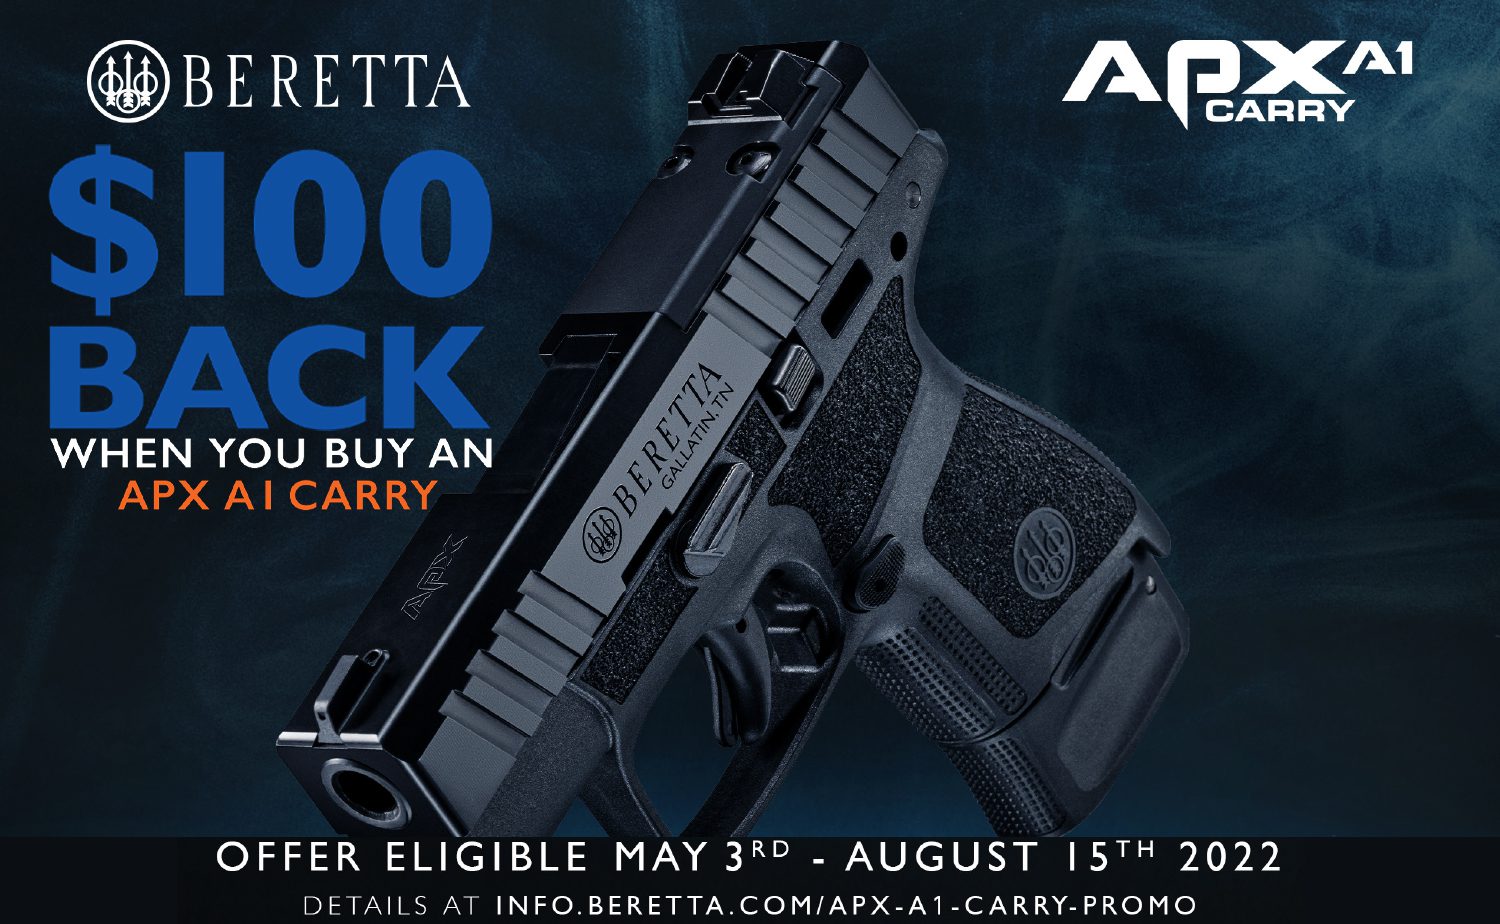 Beretta APX A1 Carry Mail In Rebate Oklahoma City Gun Store